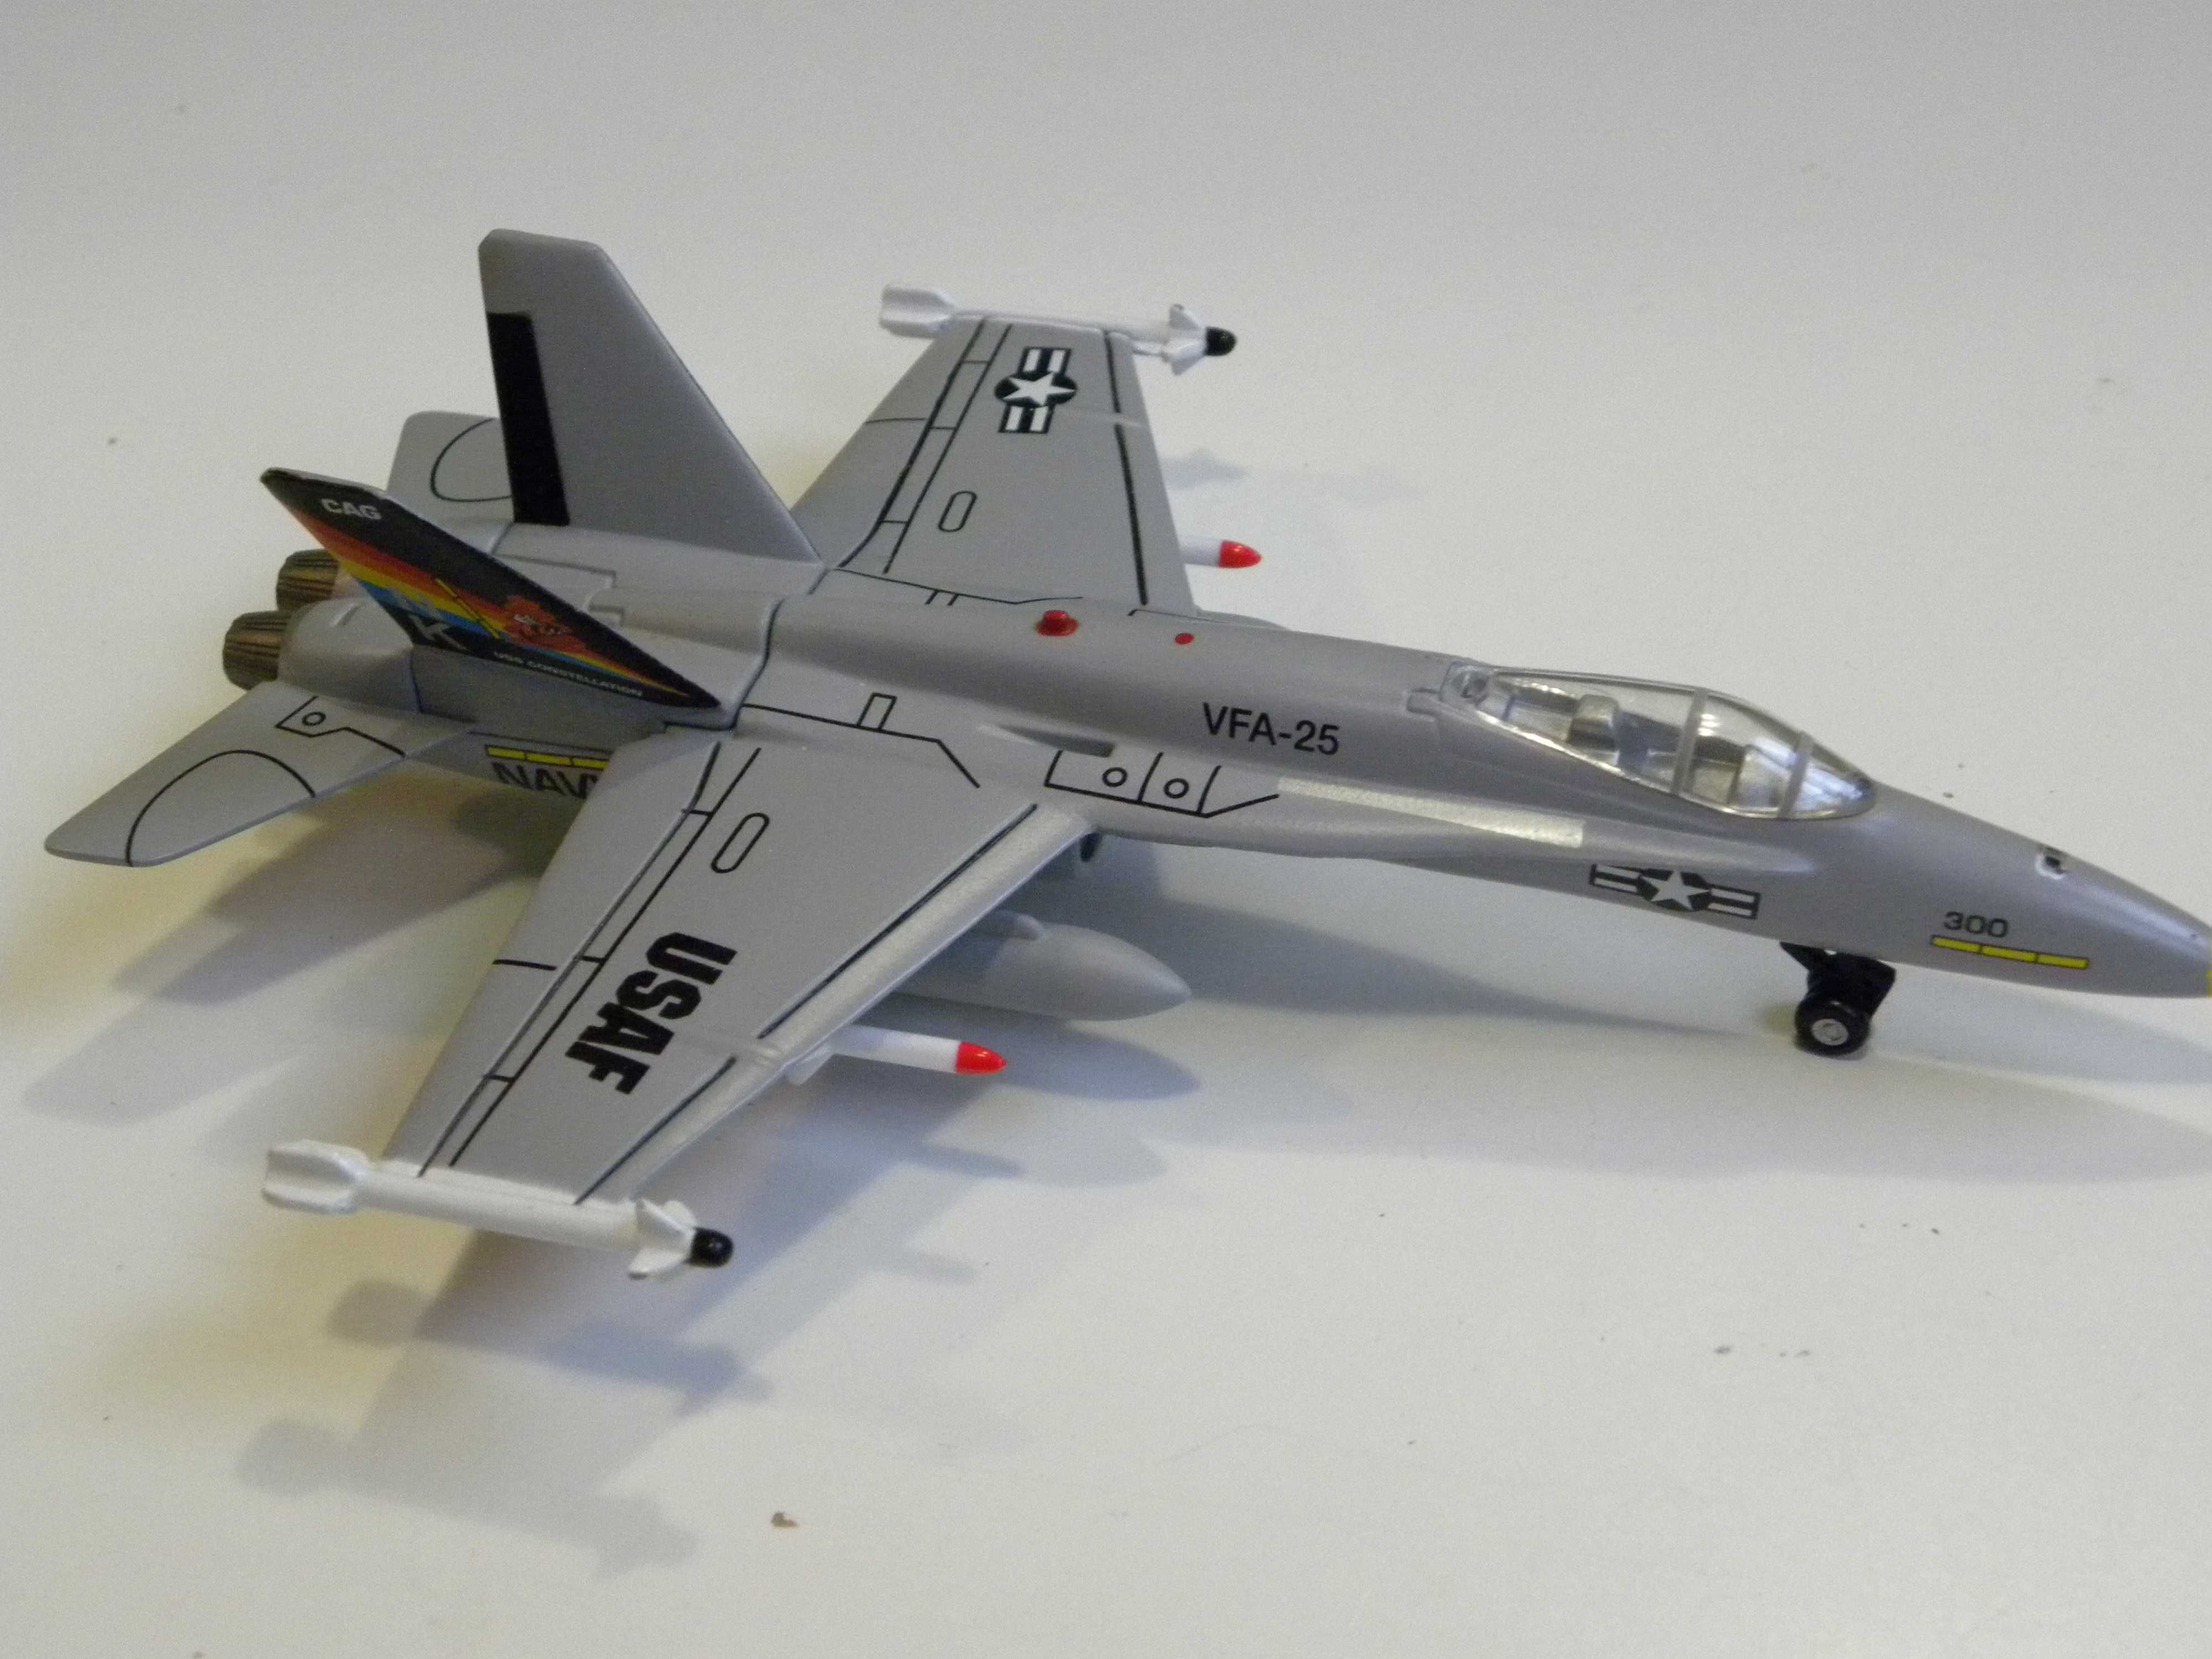 Model samolotu Realtoy USAF VFA-25